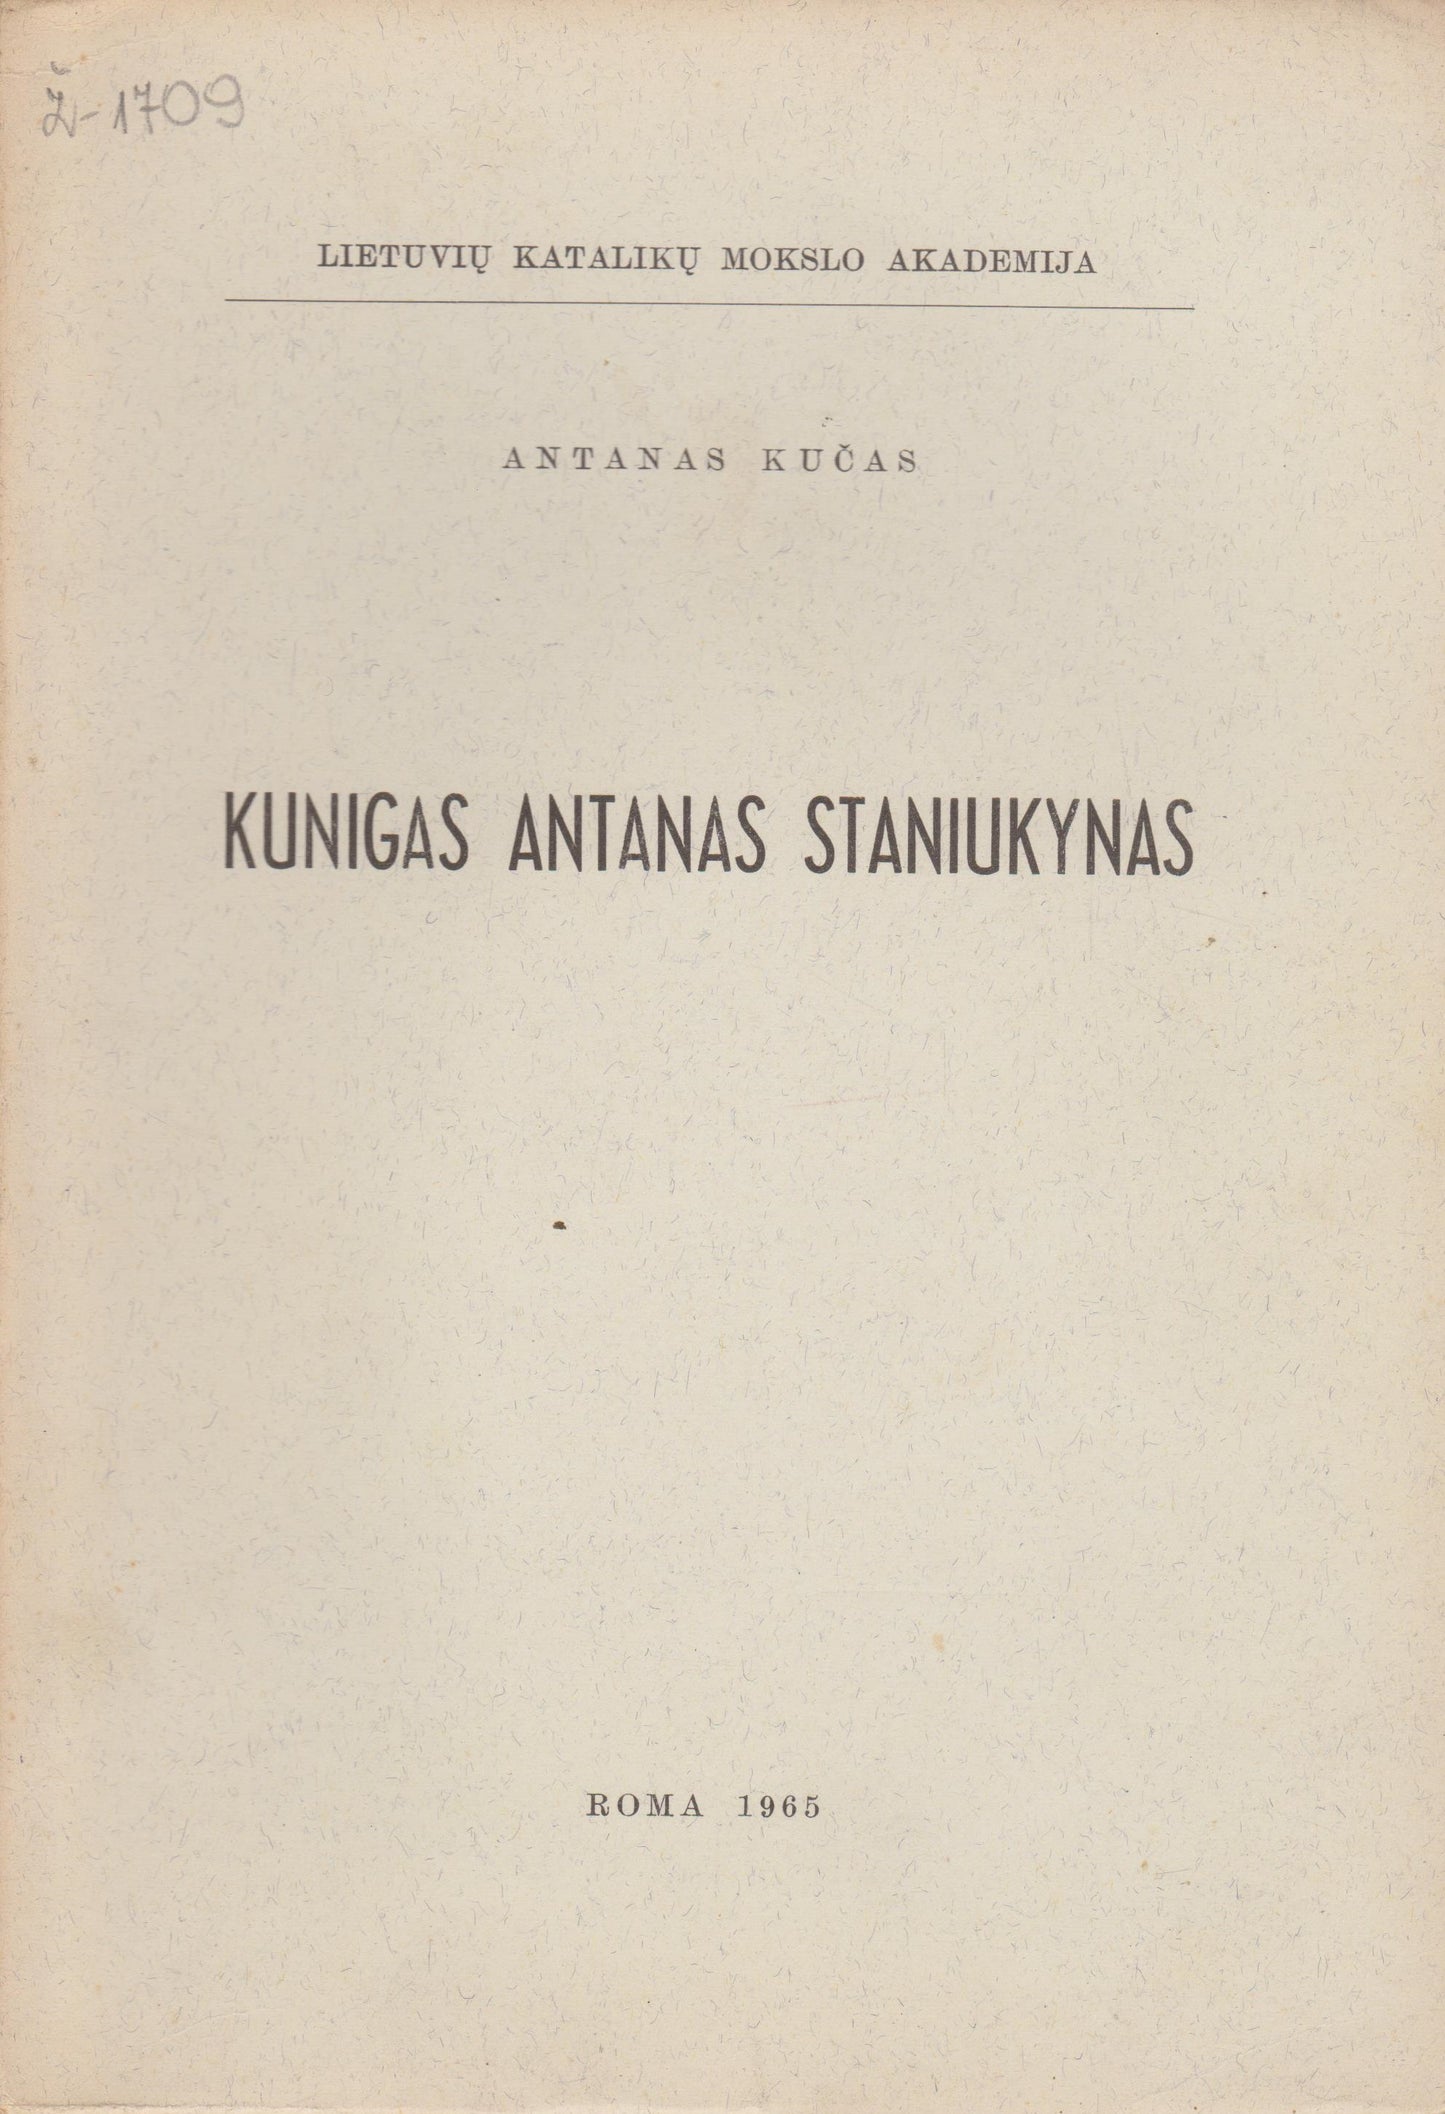 Antanas Kučas - Kunigas Antanas Staniukynas, 1965, Roma